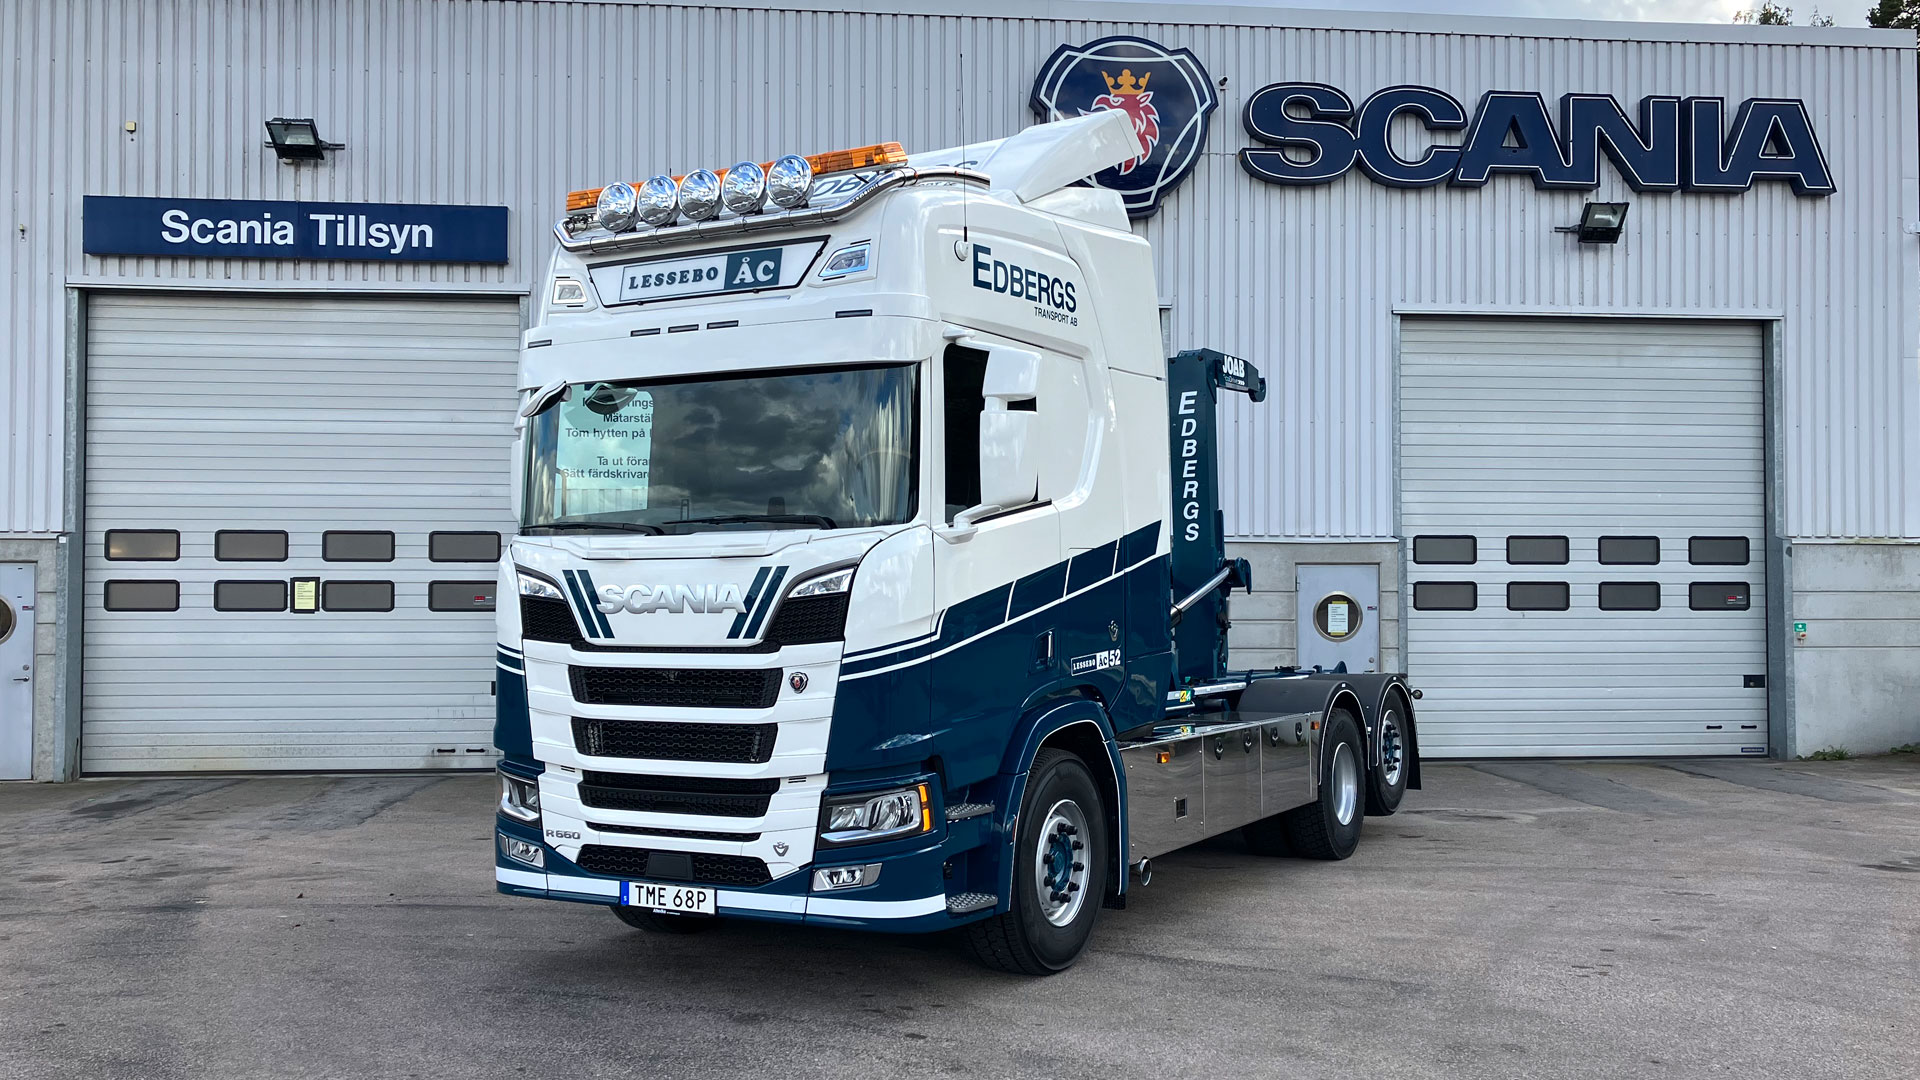 Lastbil Scania R660 med lastväxlare, levererad av Atteviks Lastbilar till Vigo Edbergs Transport AB.